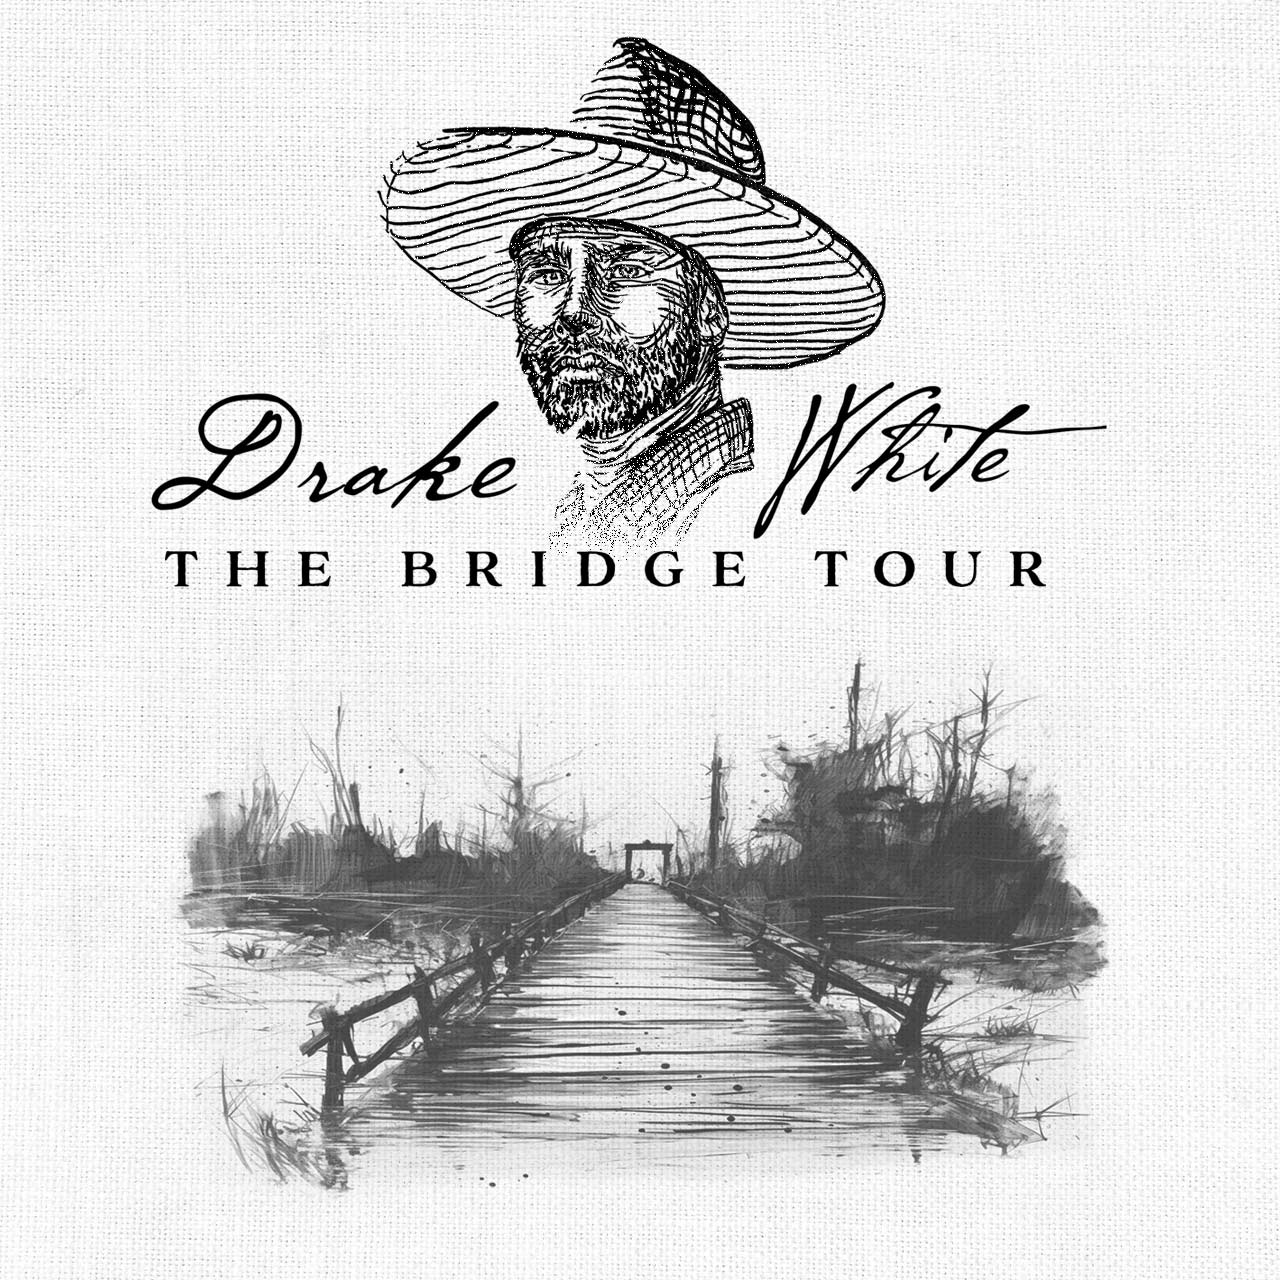 The Bridge Tour